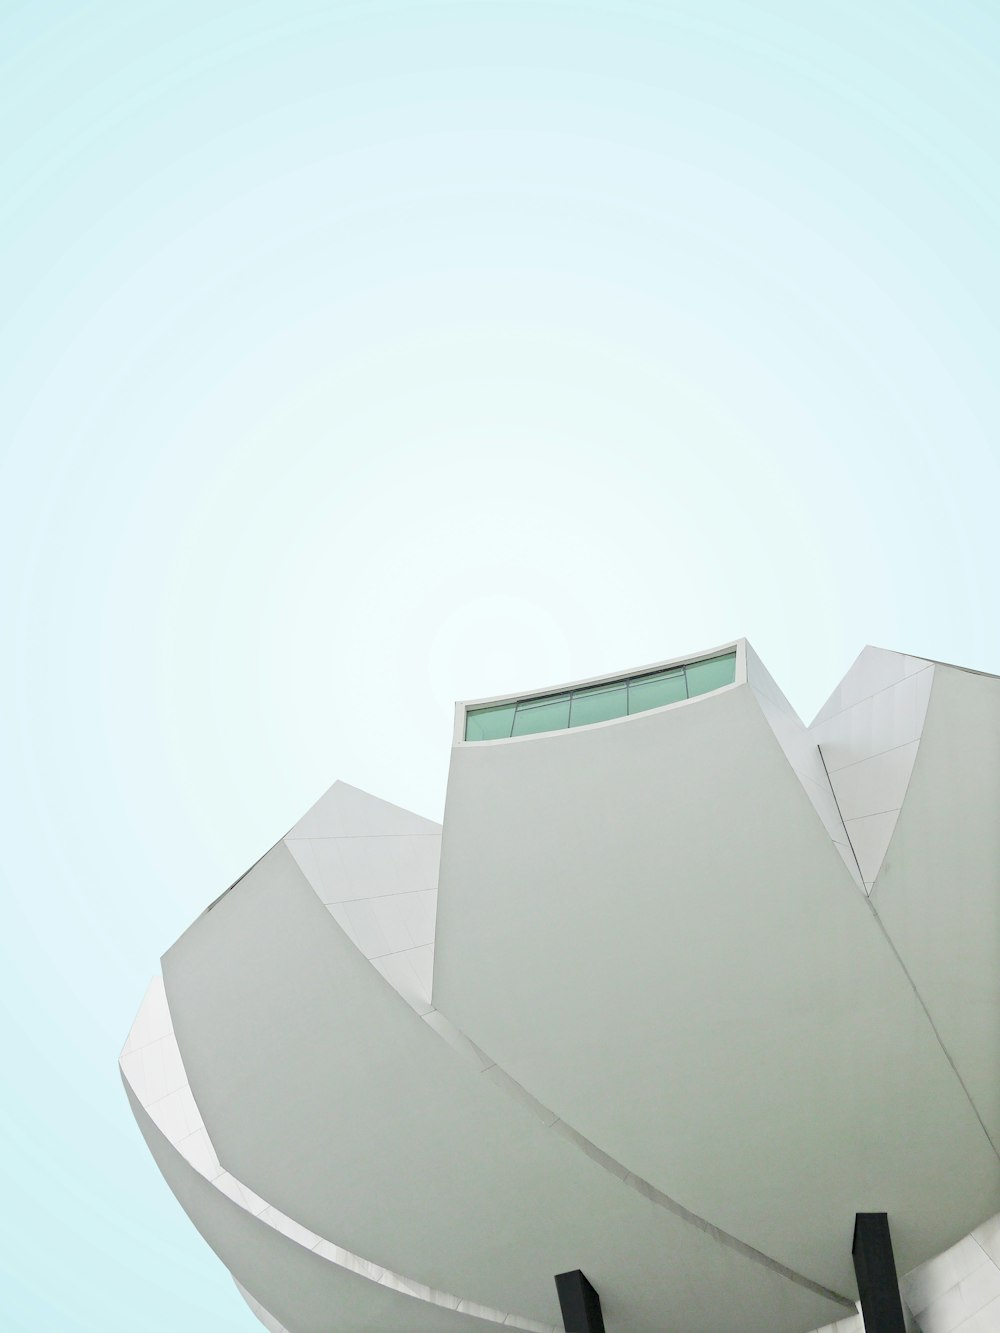 Fotografía de ángulo bajo de un edificio pintado de blanco